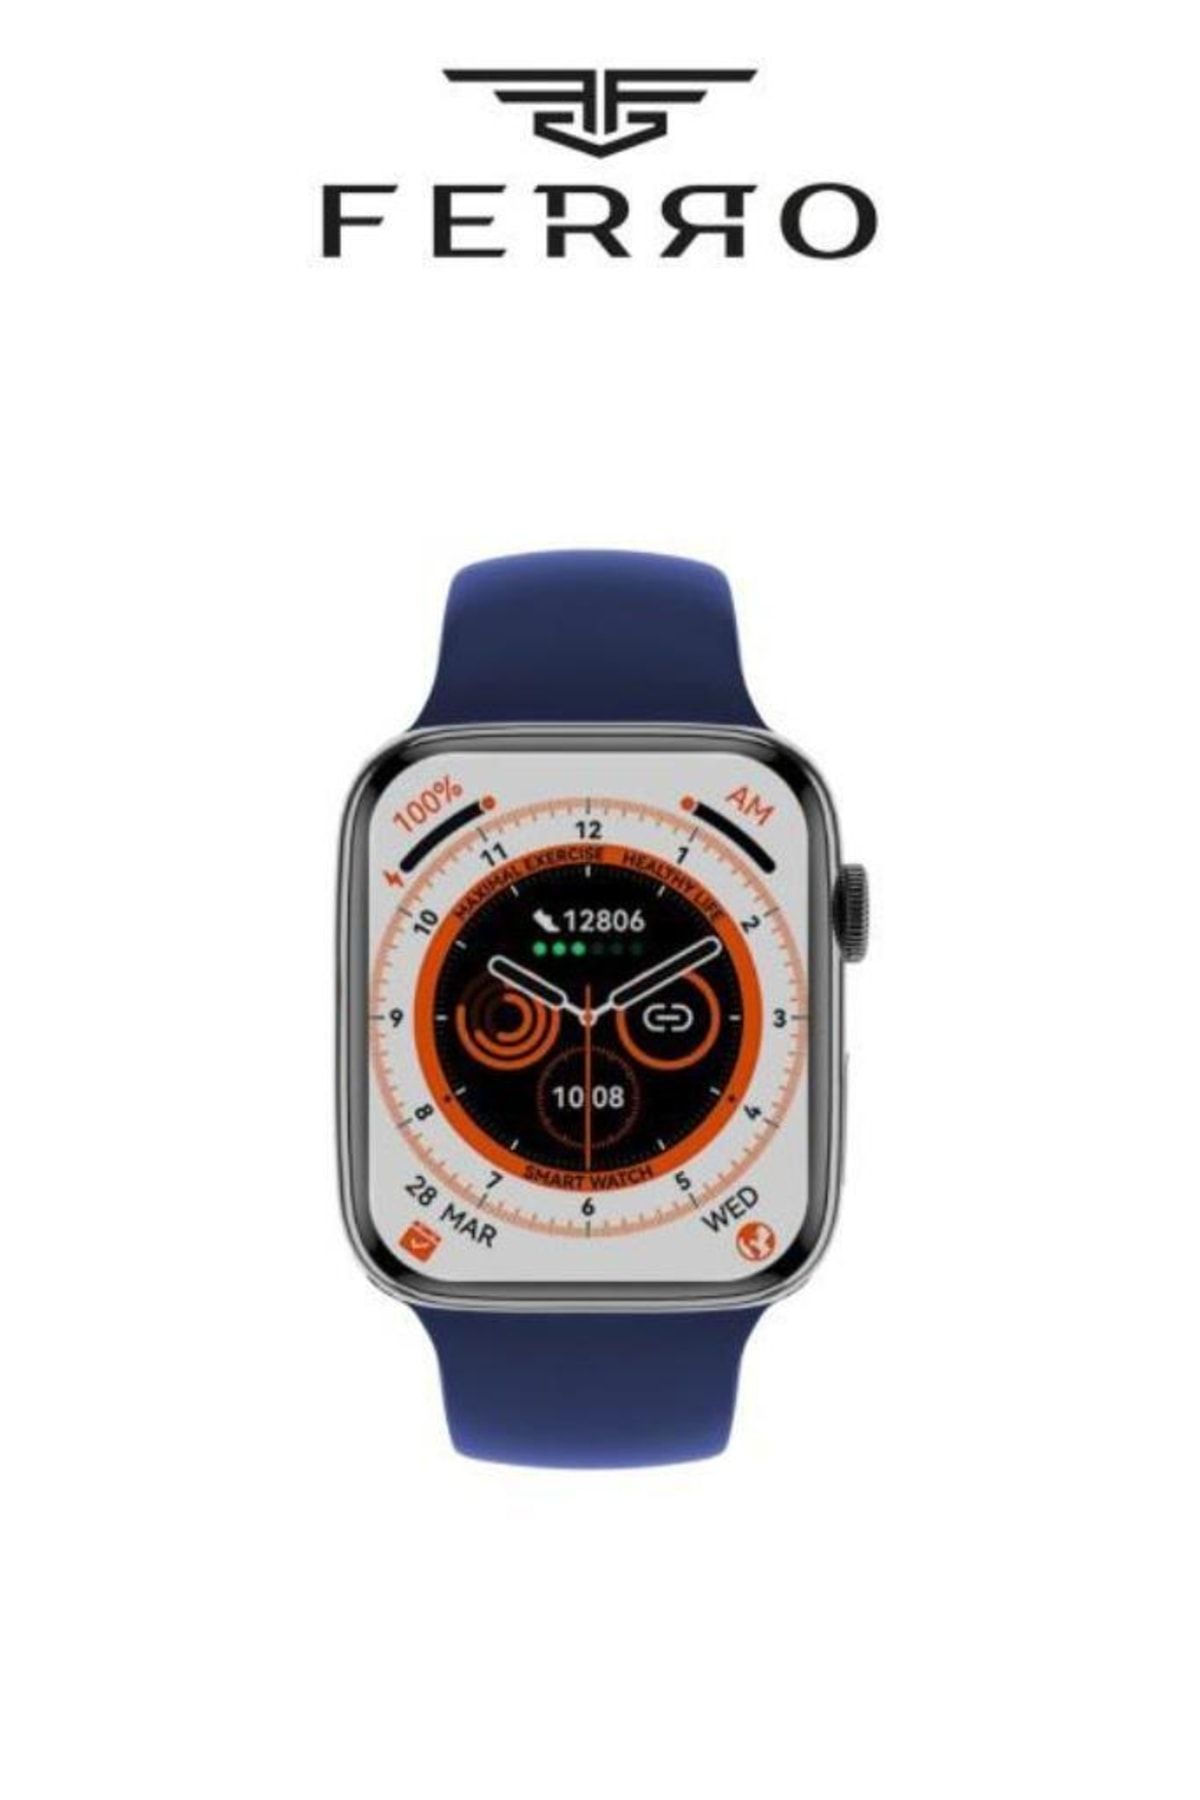 FERRO Yeni Model Akıllı Saati - Son Teknoloji Orjinal Garantili Akıllı Saat